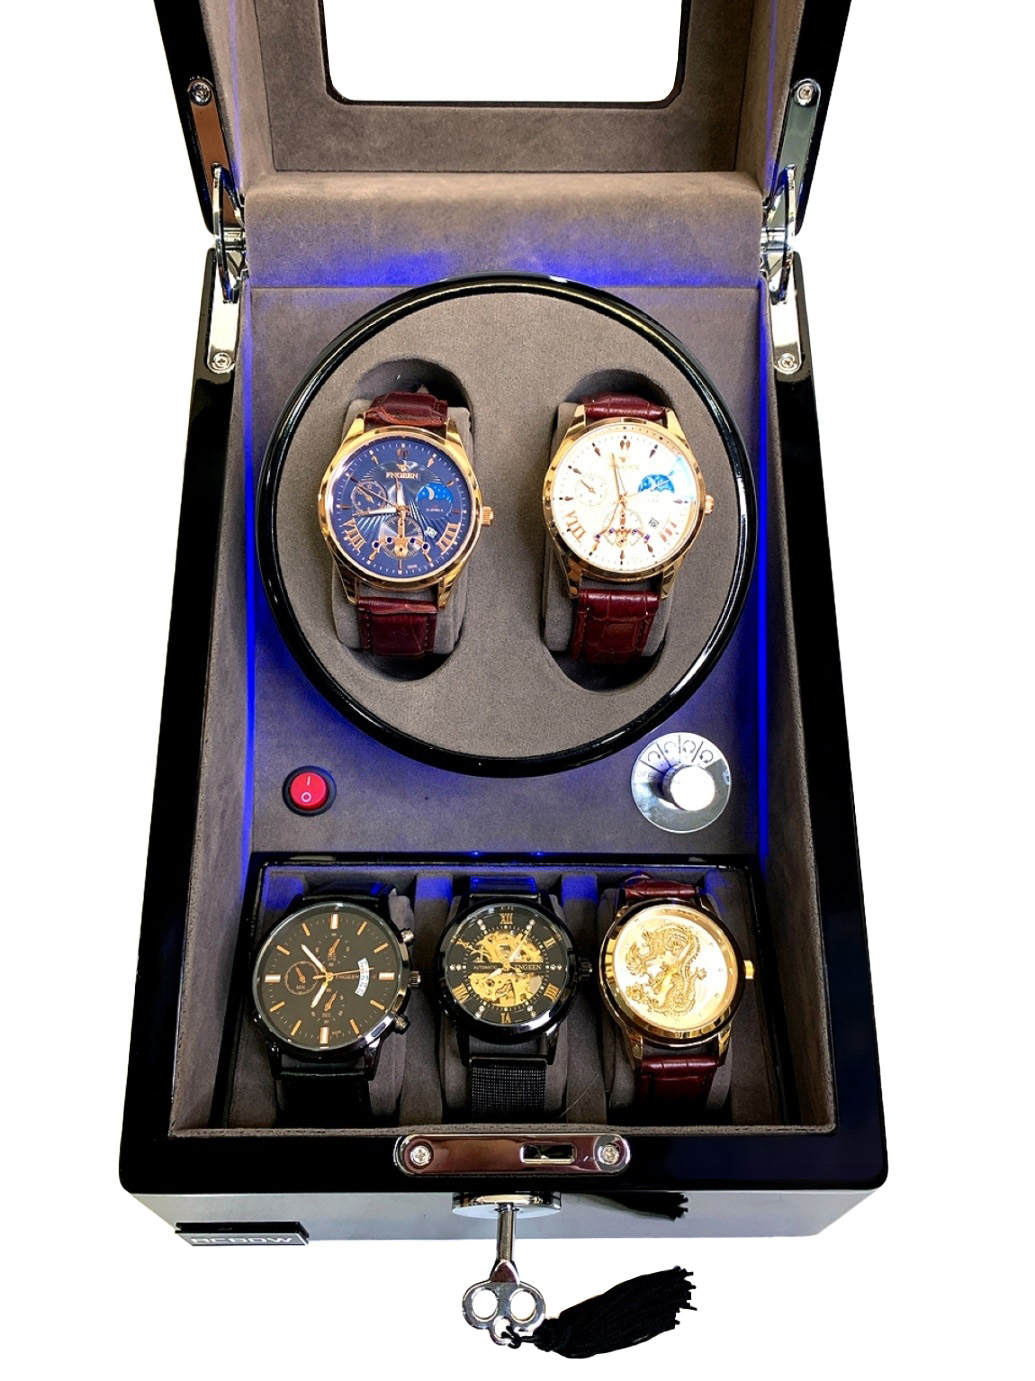 Hộp đồng hồ ACBOW 2 xoay + 3 tĩnh cao cấp, sang trọng, giá rẻ